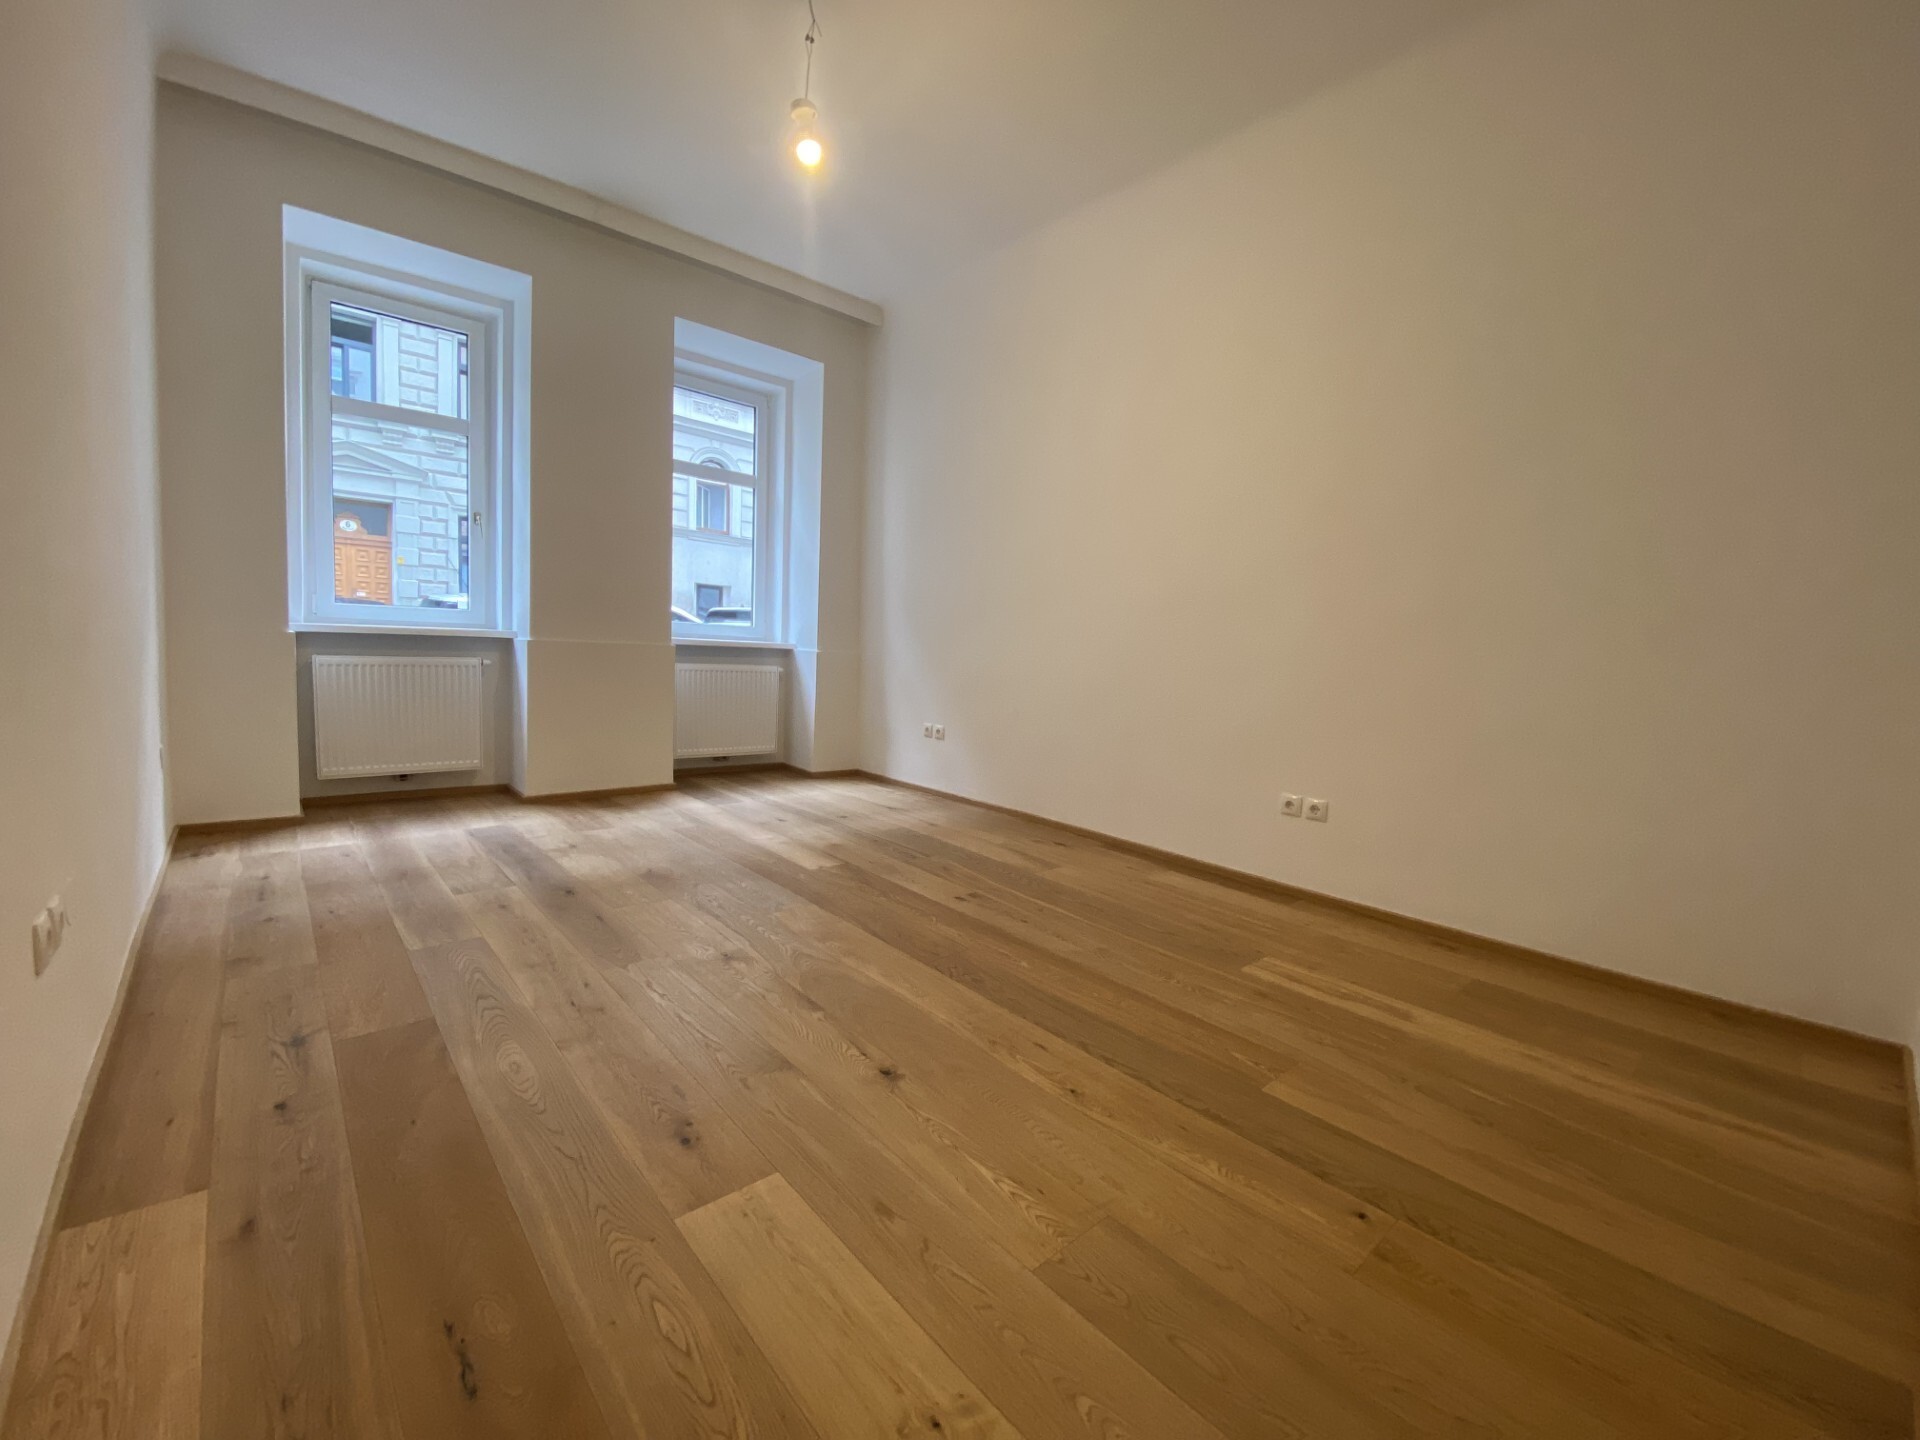 Perfekt sanierte Altbauwohnung, 2 Zimmer, zu kaufen in 1050 Wien